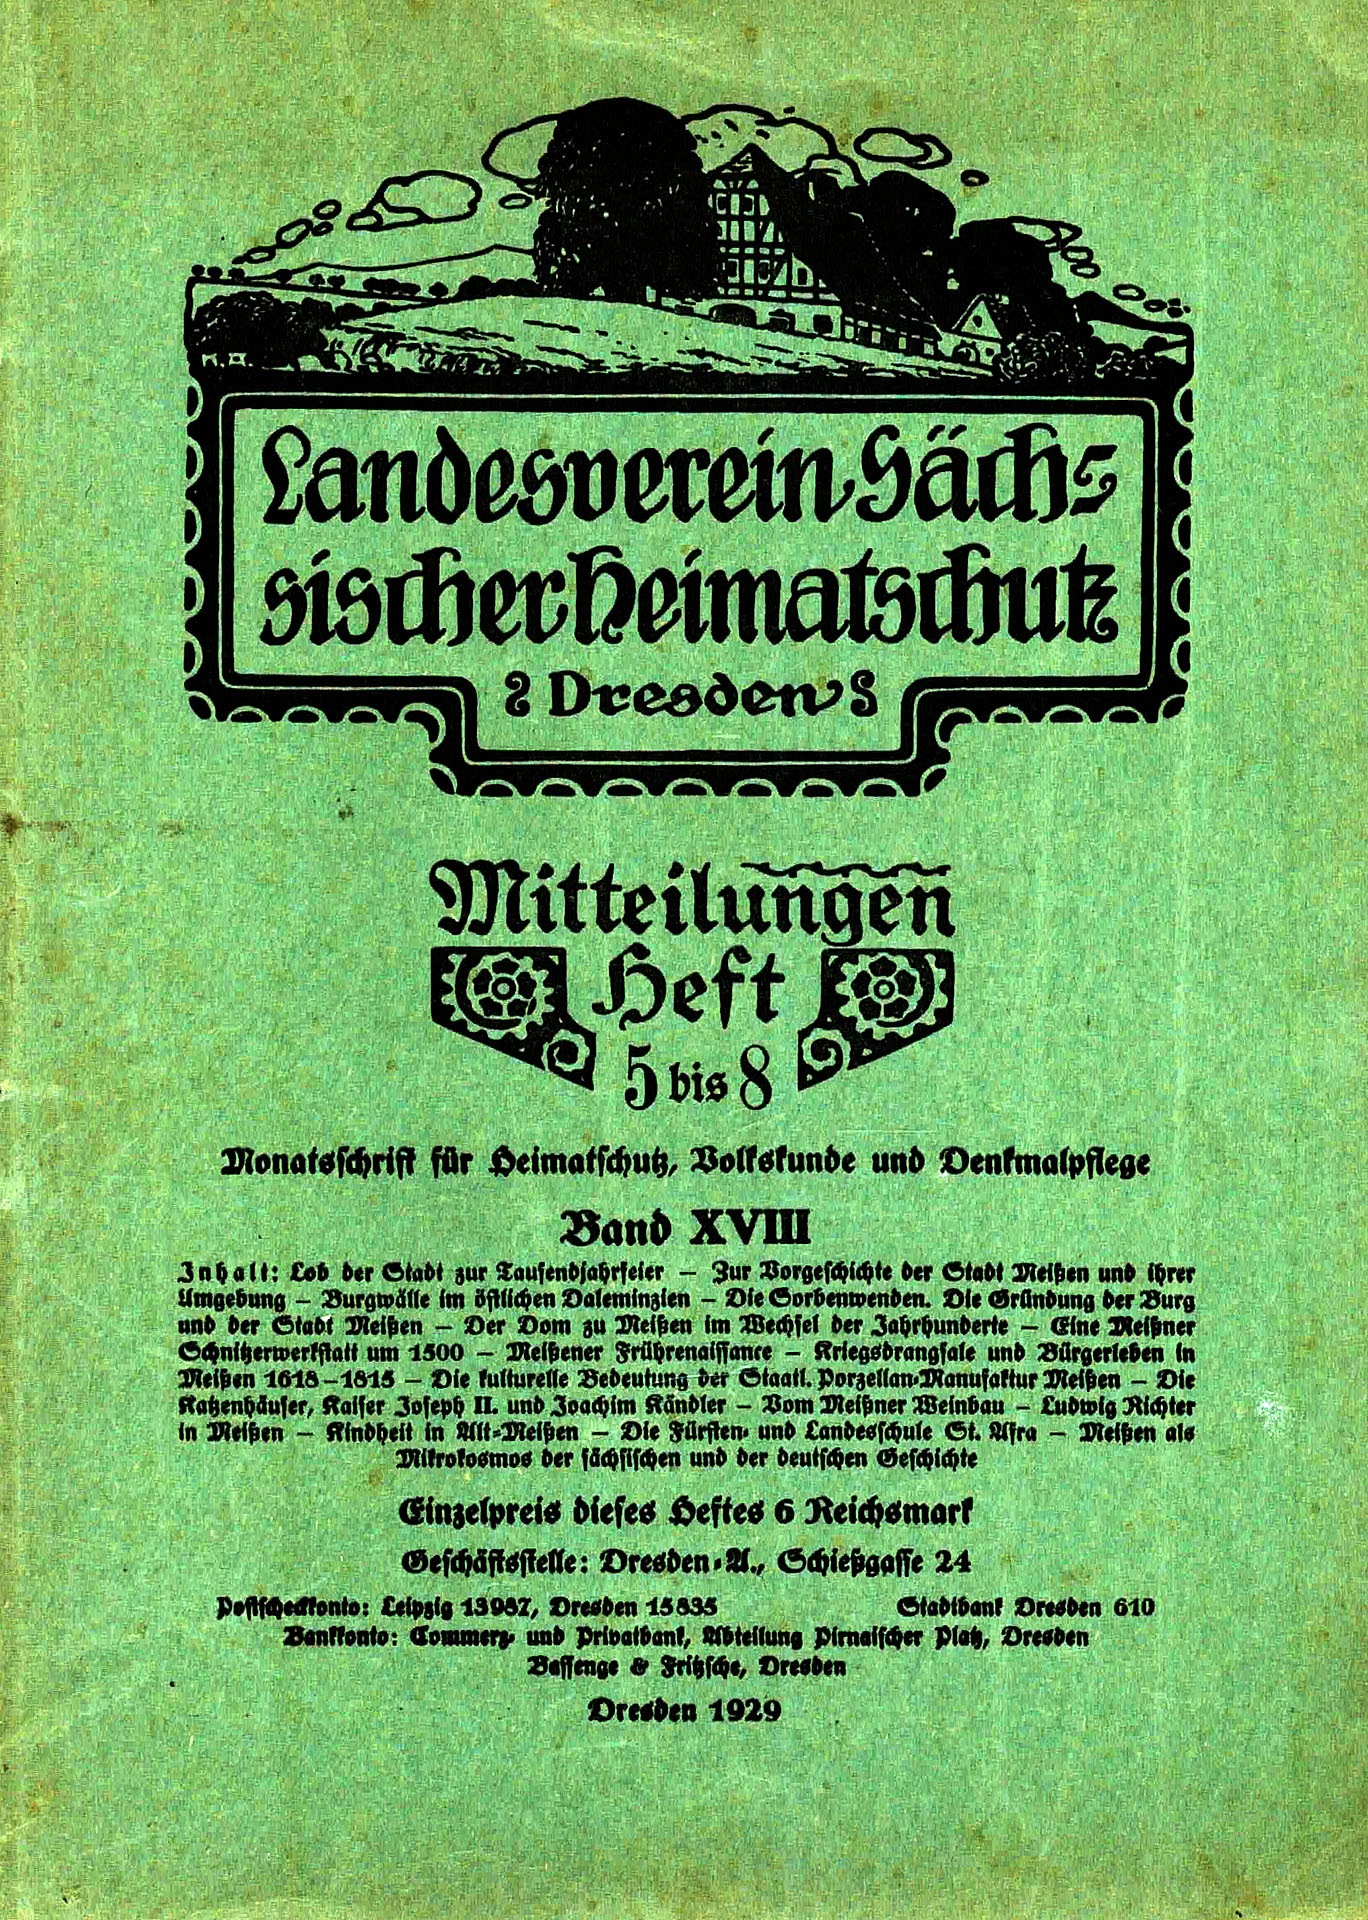 Landesverein Sächsischer Heimatschutz, Mitteilungen Heft 5 bis 8 - Landesverein Sächsischer Heimatschutz, Dresden